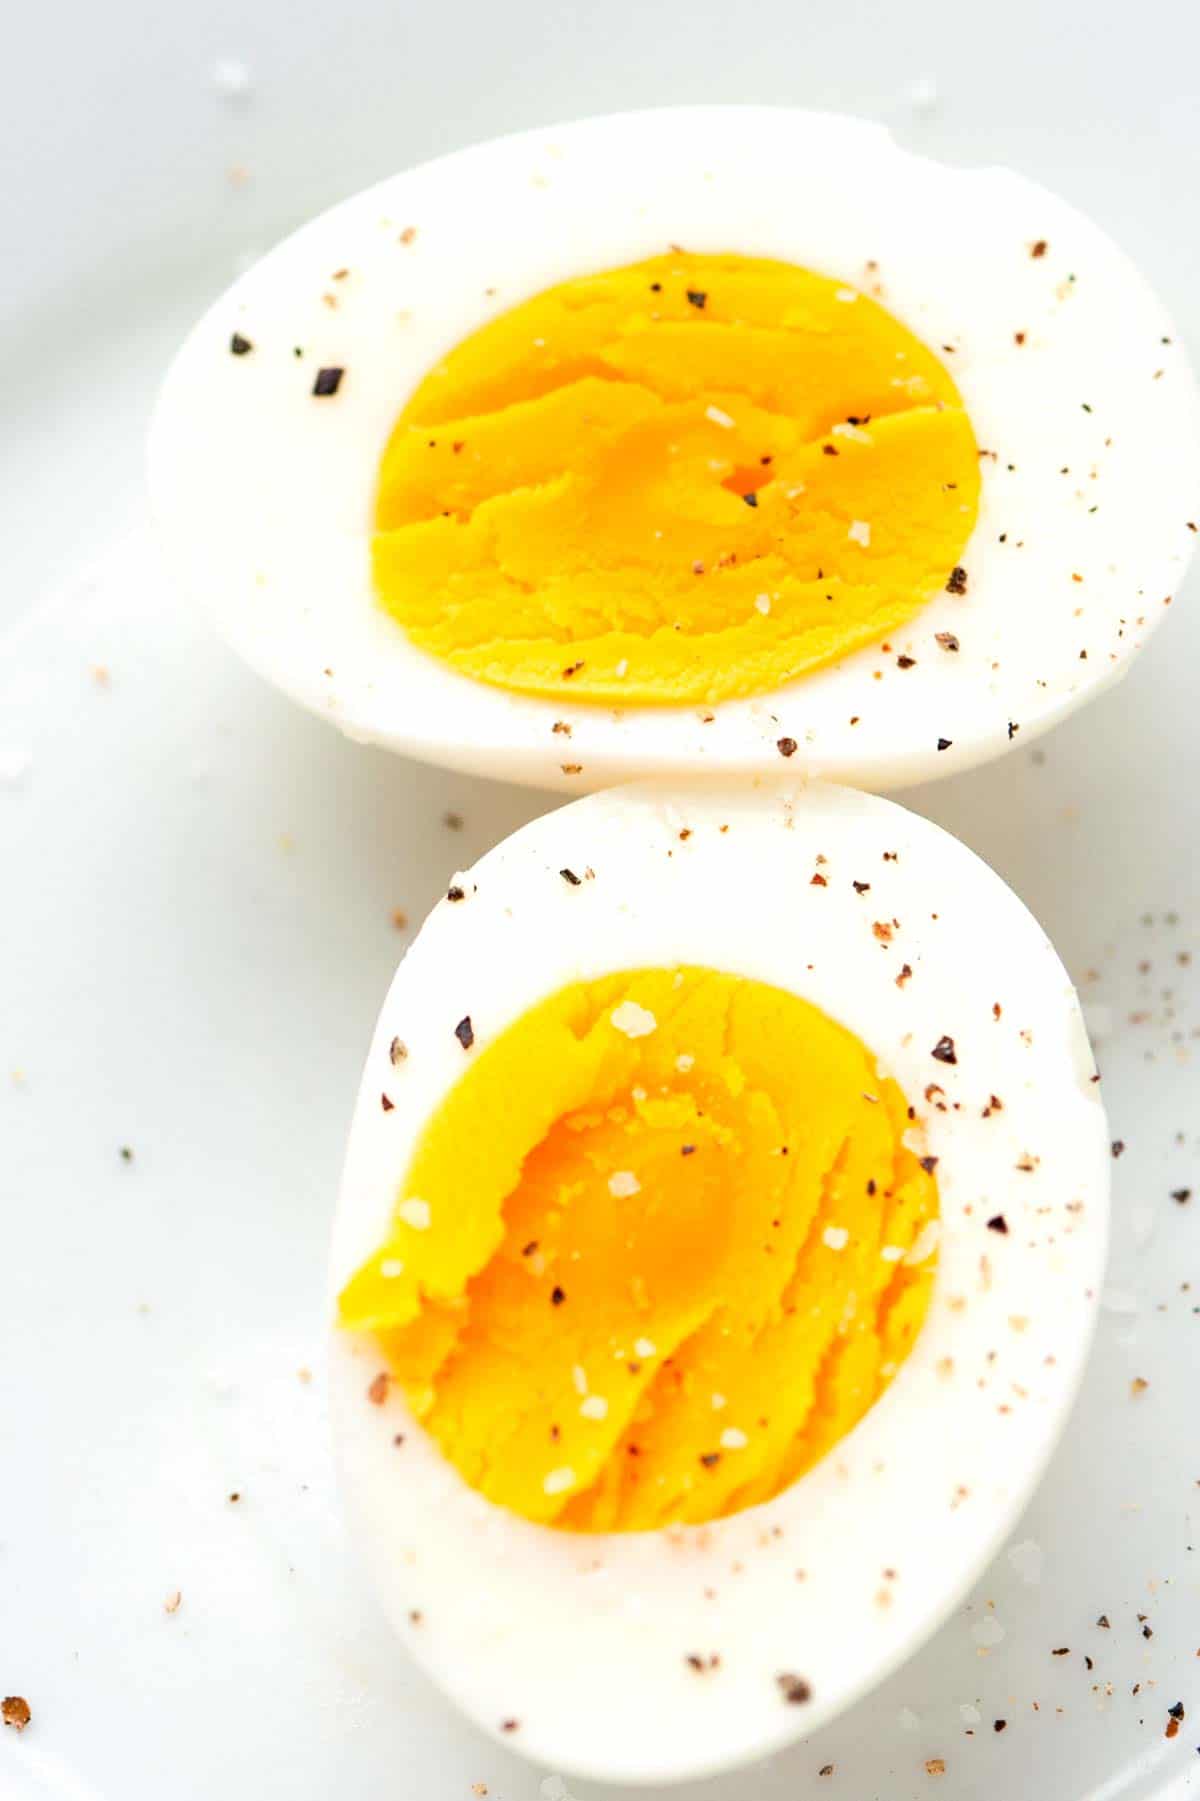 https://www.inspiredtaste.net/wp-content/uploads/2011/12/How-to-Cook-Hard-Boiled-Eggs-3-1200.jpg